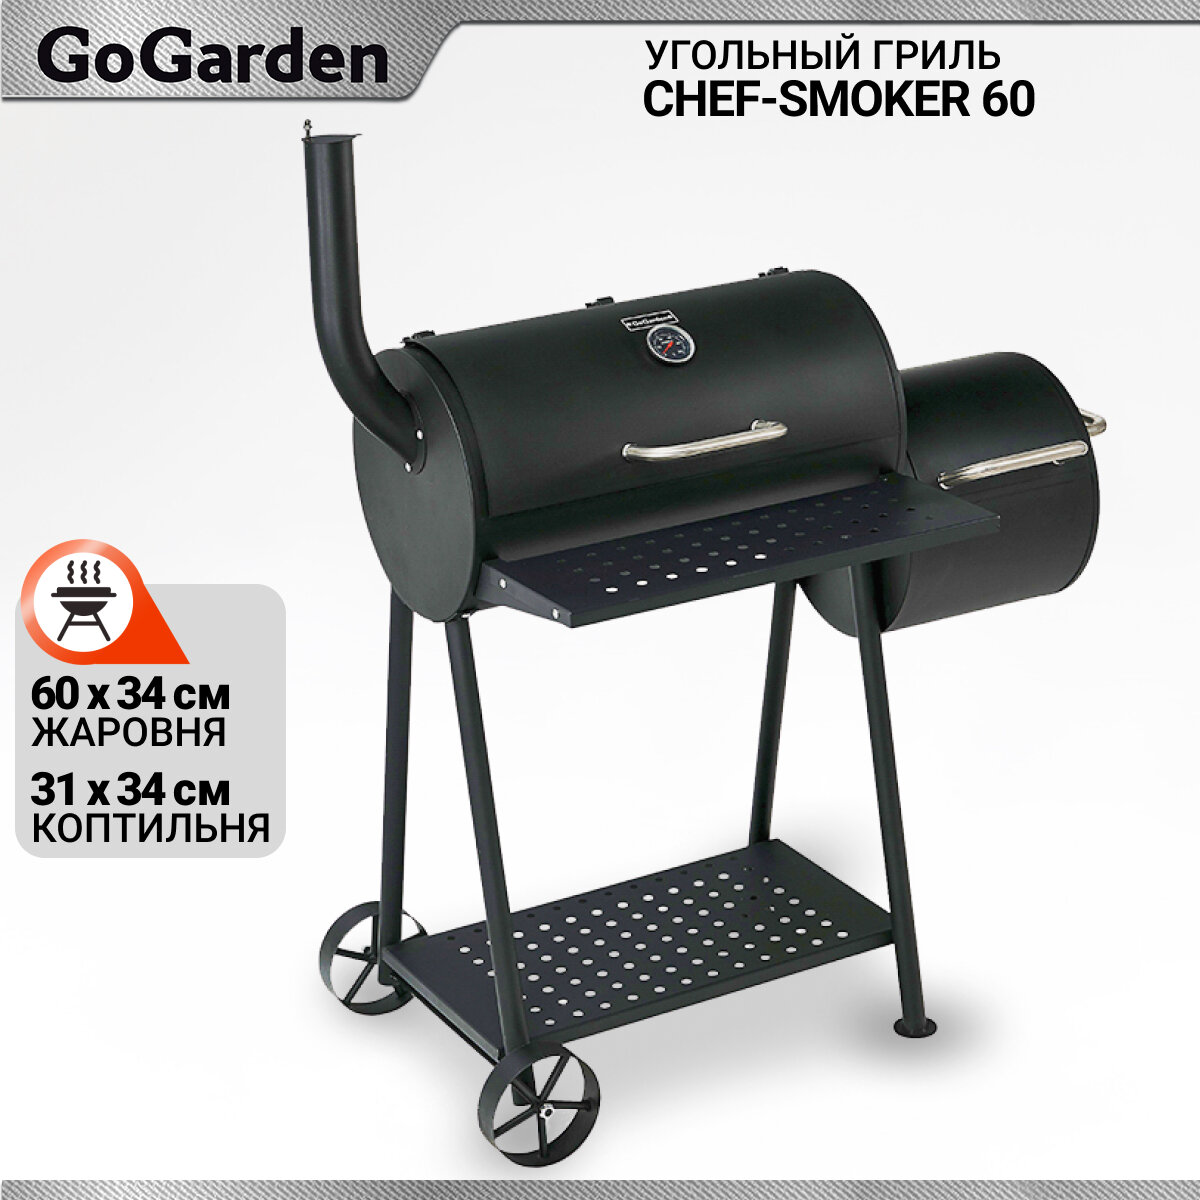 Гриль-коптильня угольный Go Garden Chef-Smoker 60 125.5х53х55 см